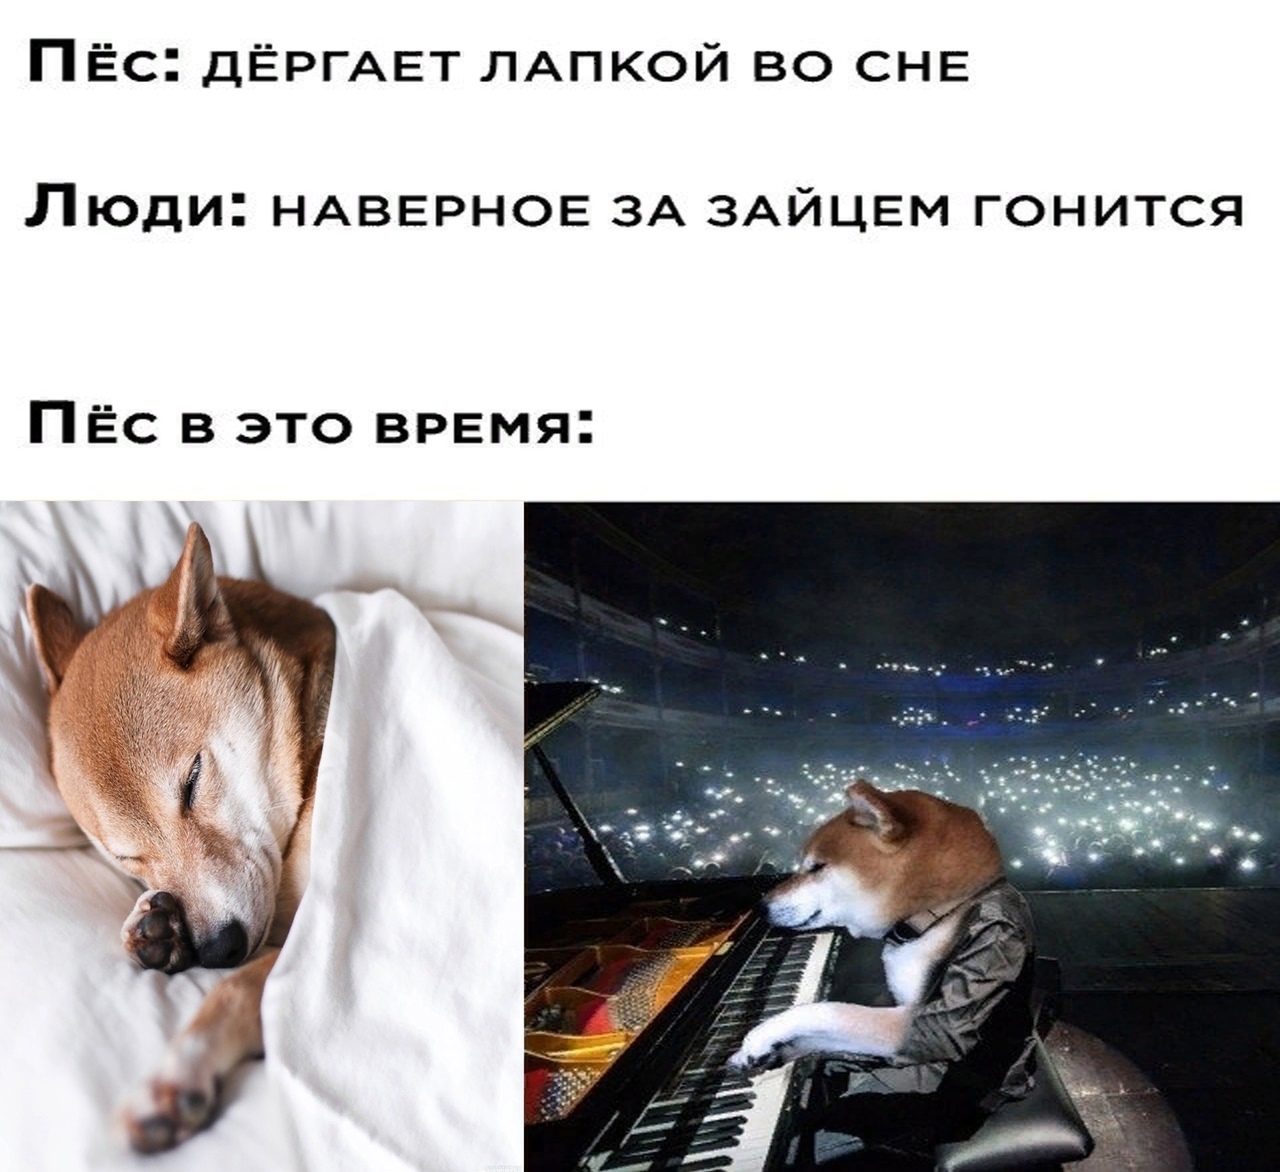 Пёс: *дёргает лапкой во сне*
Люди: Наверное за зайцем гонится.
Пёс в это время: *Играет на пианино*